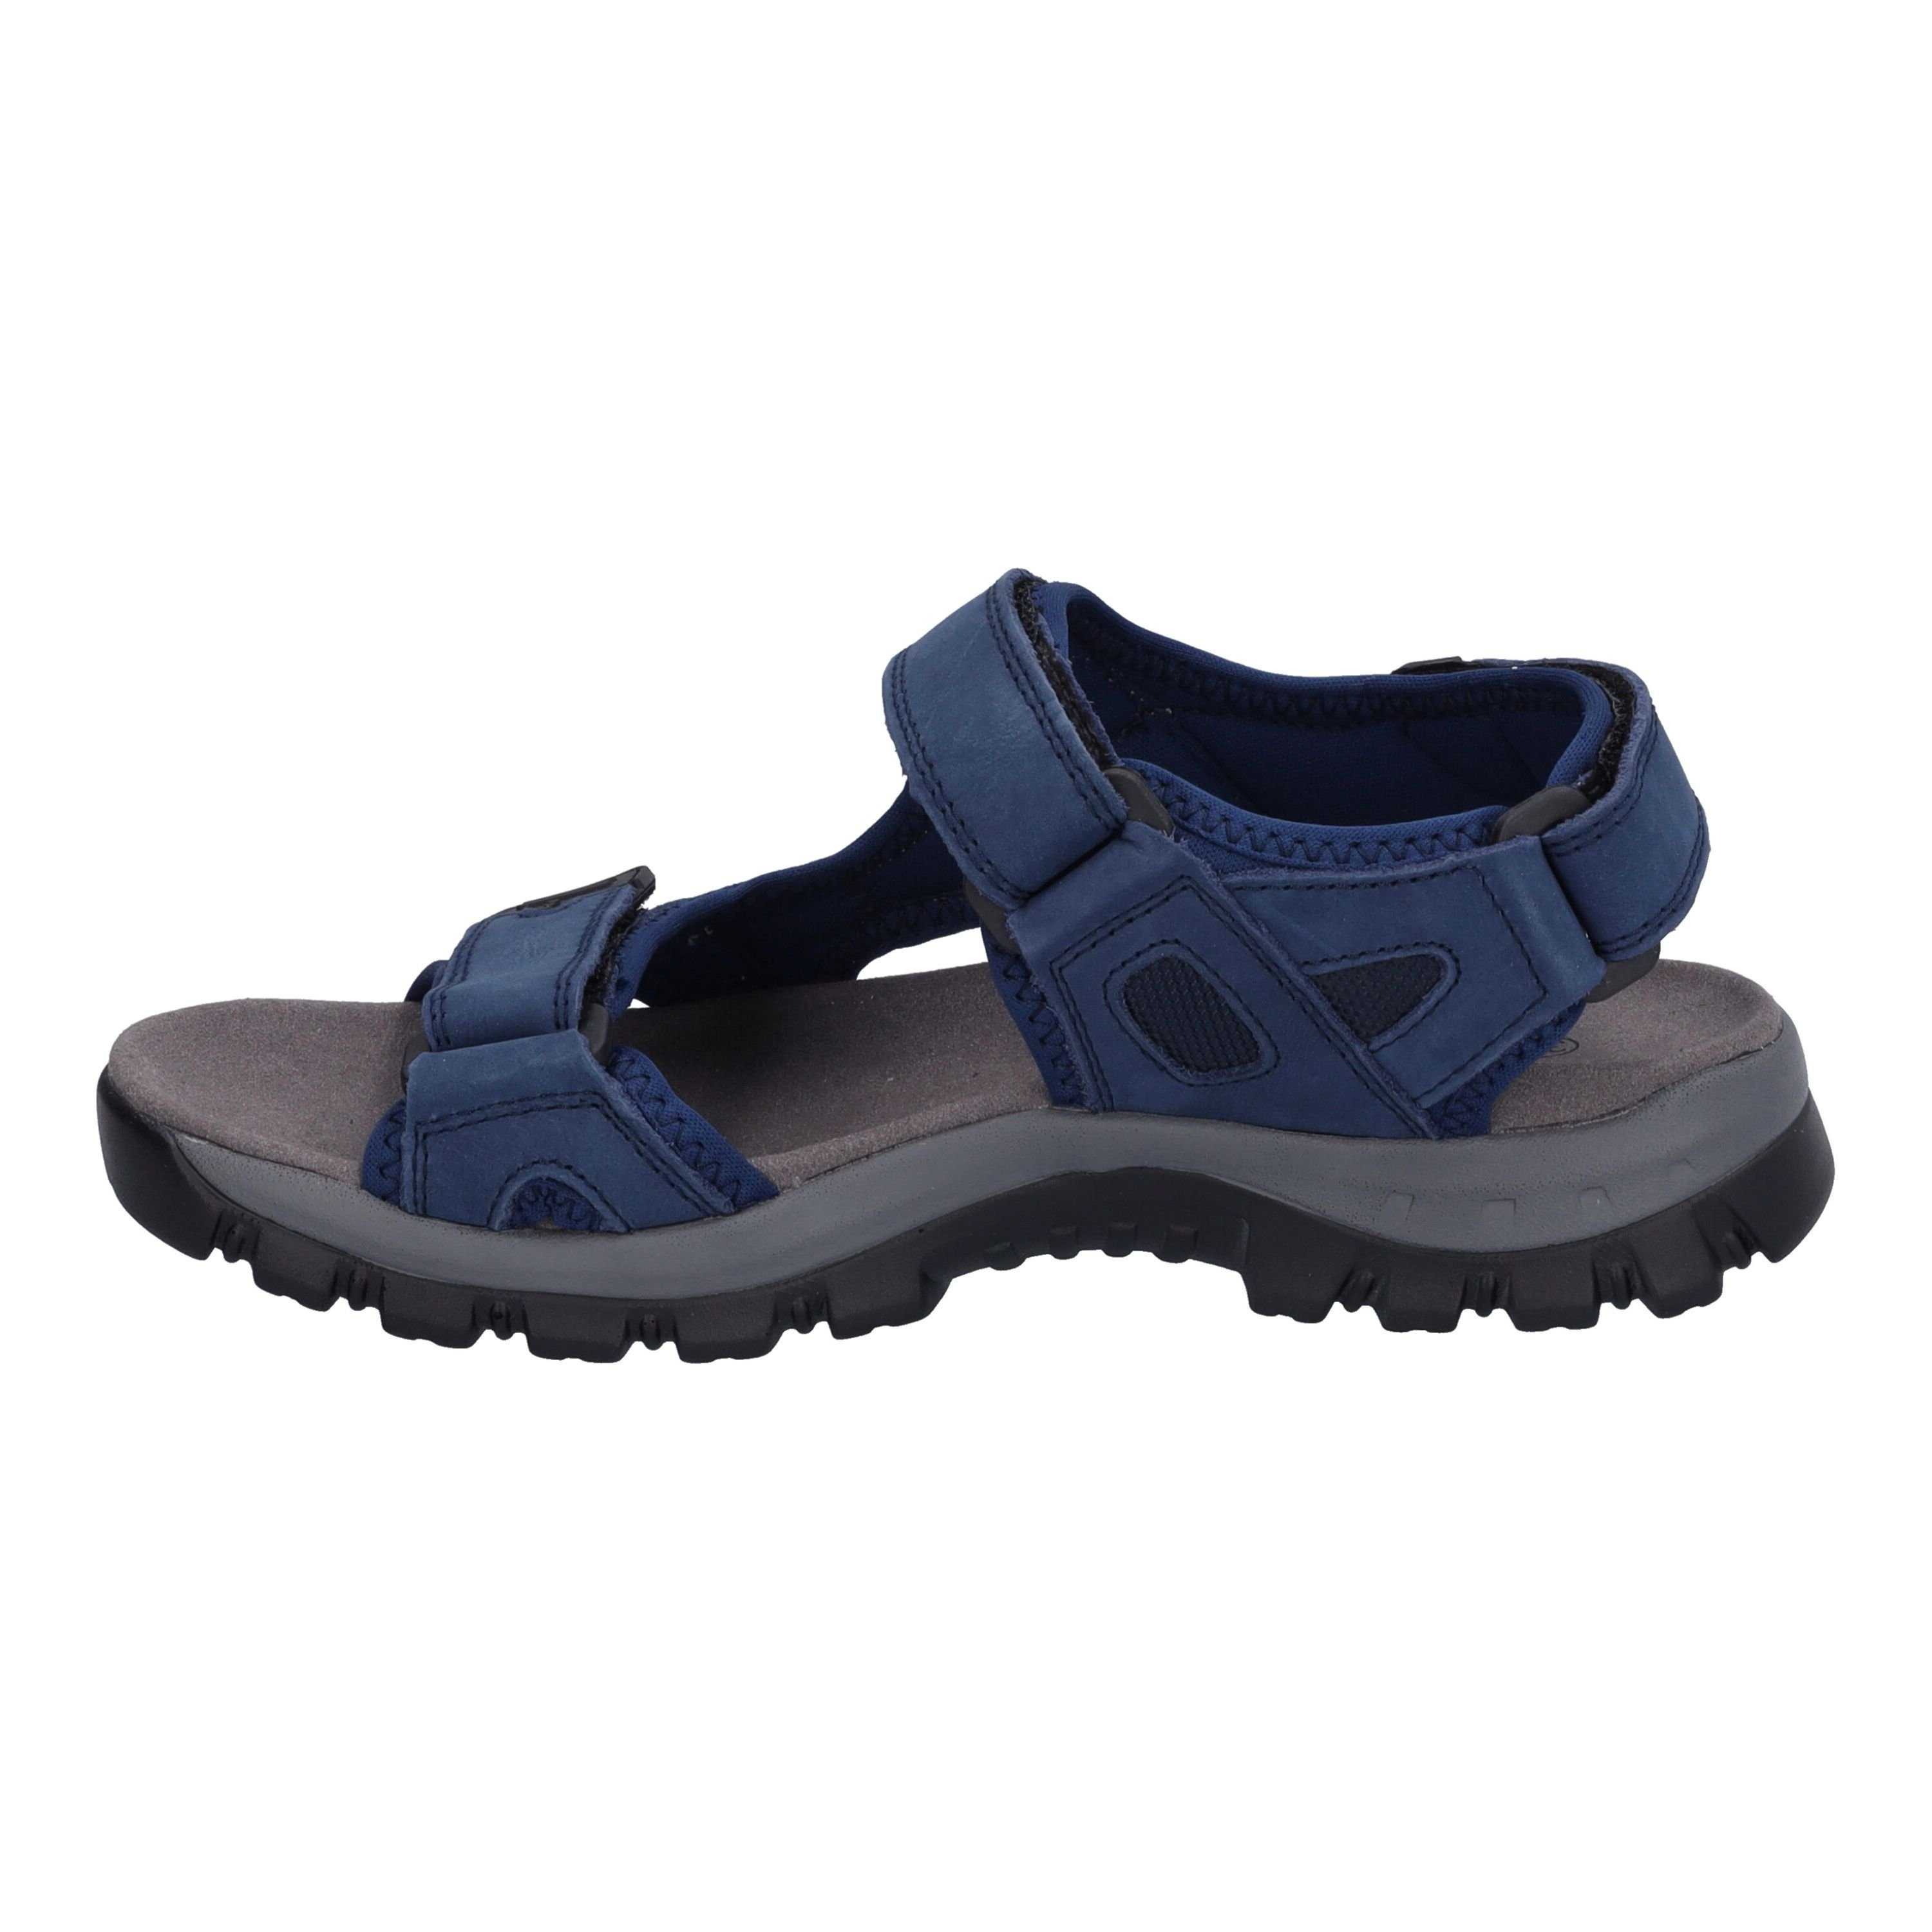 Sandale blau Avora Westland 02, blau-kombi